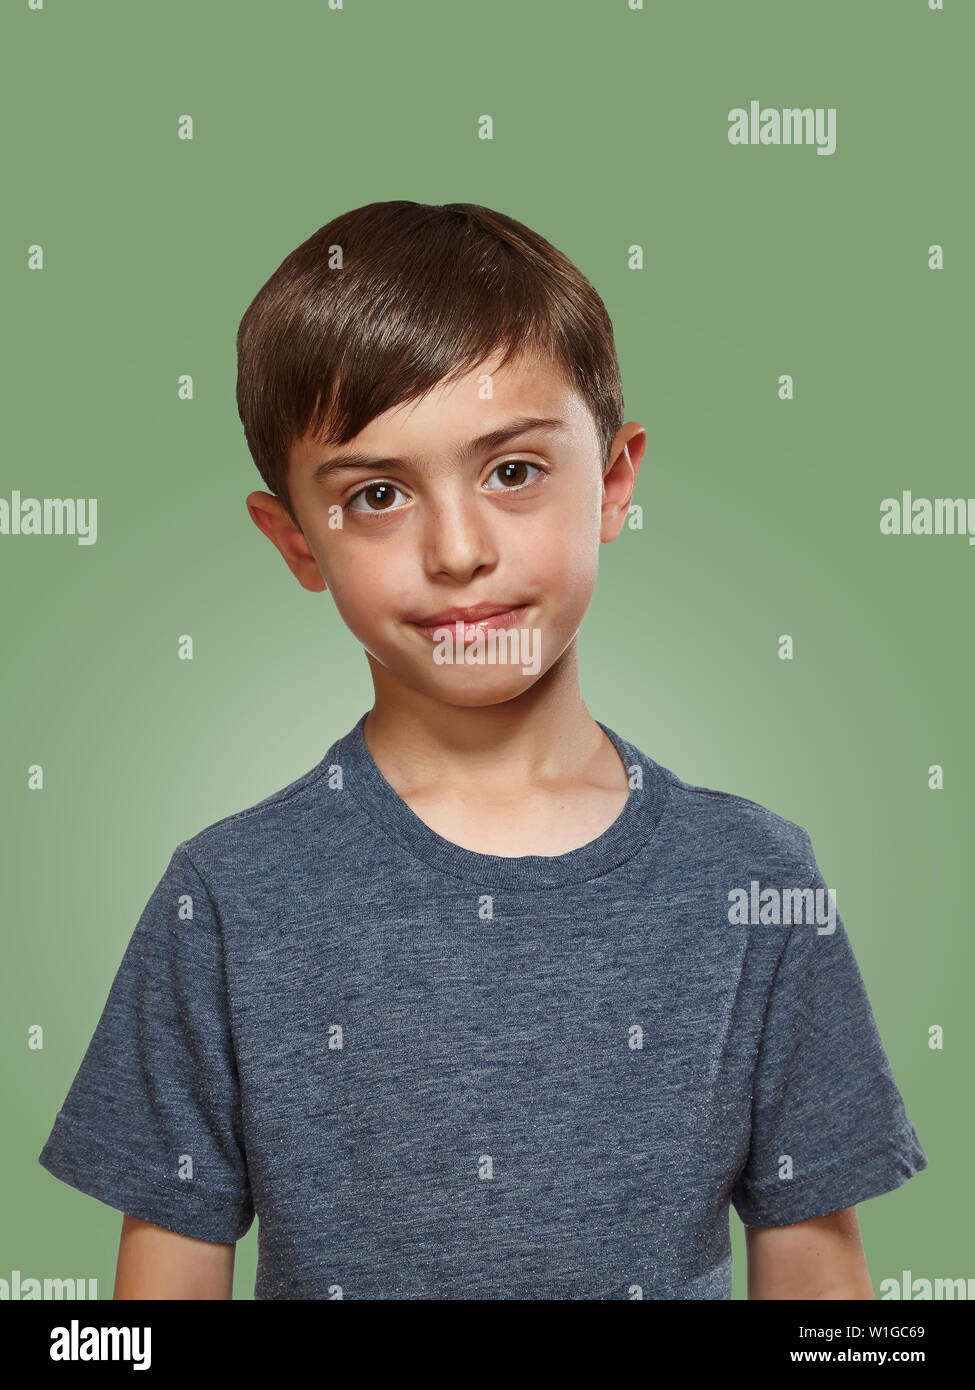 Junge männliche Kind in grauen t-shirt Stockfoto